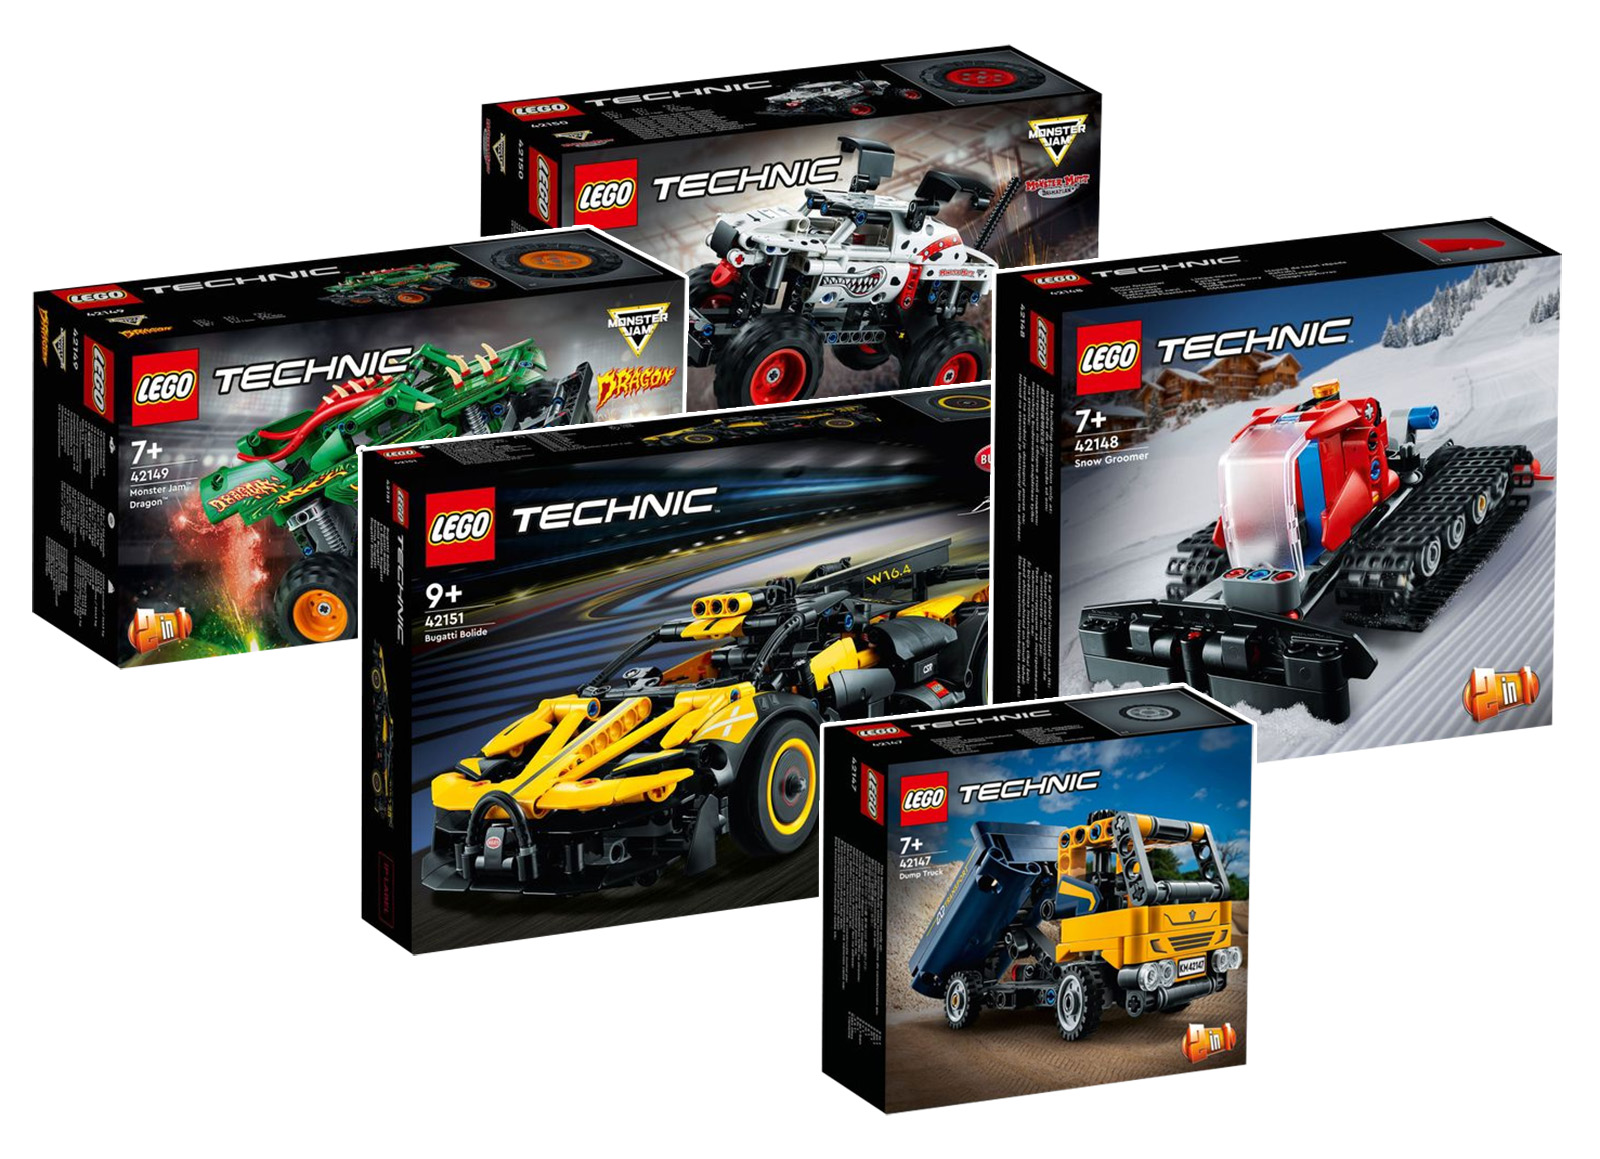 Nou LEGO Technic pentru prima jumătate a anului 1: imaginile oficiale sunt disponibile